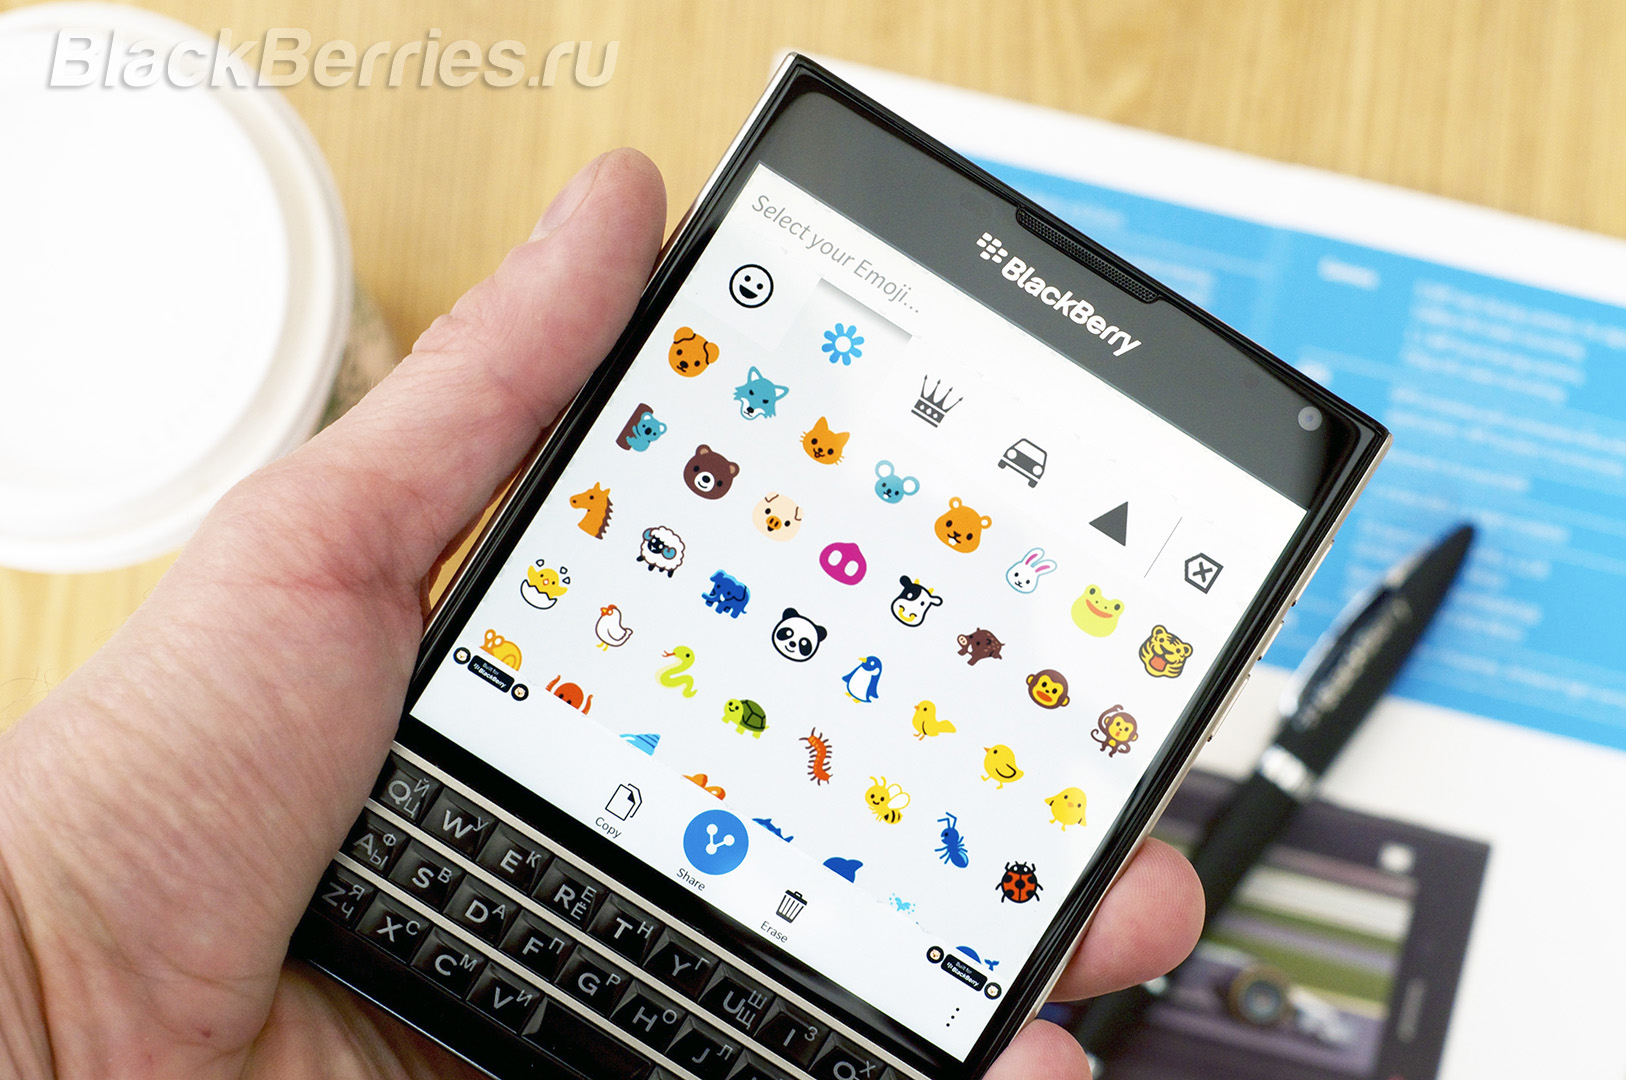 BlackBerry-Passport-App-Review-2-07